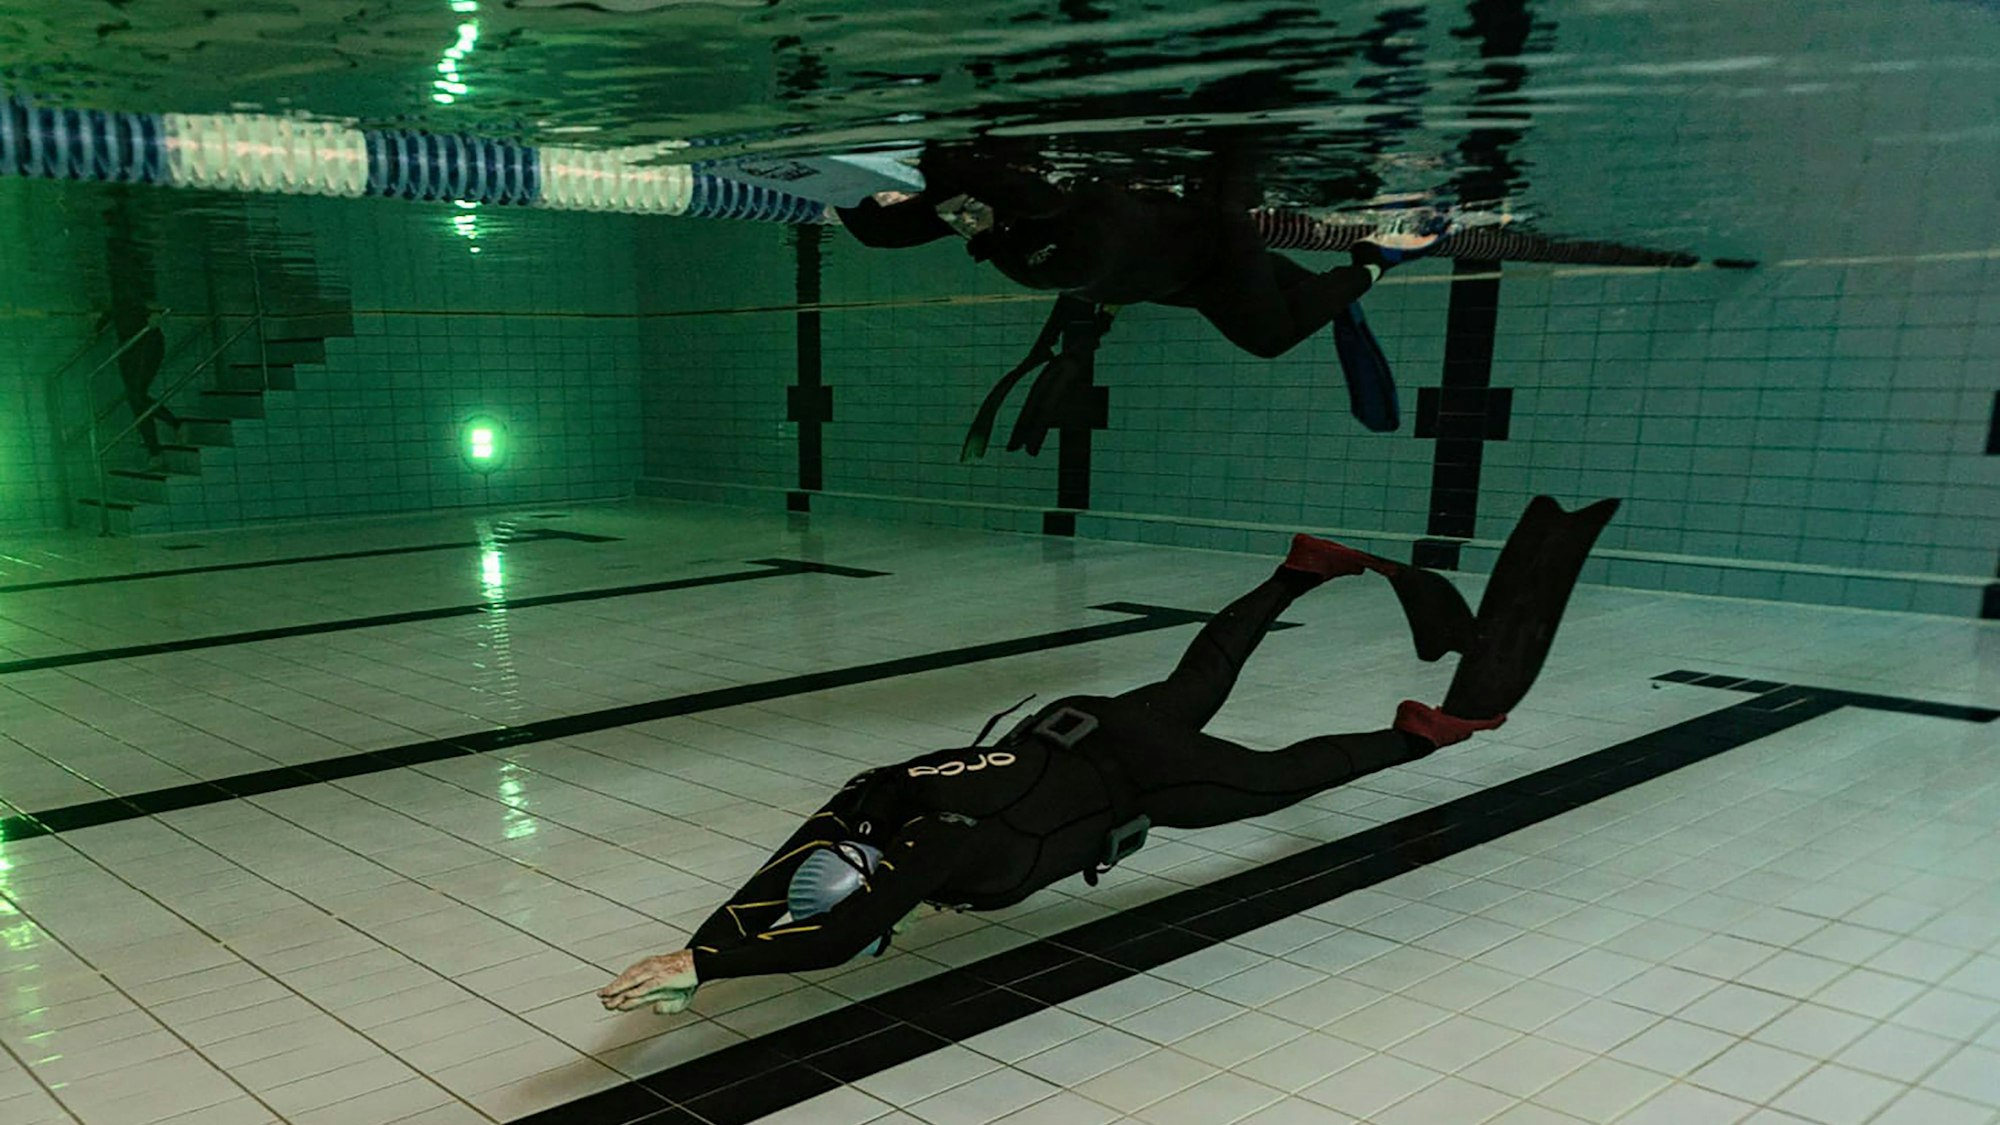 Apnoetaucherin Hannelore Becker im Taucheranzug beim Streckentauchen in einem Schwimmbad.